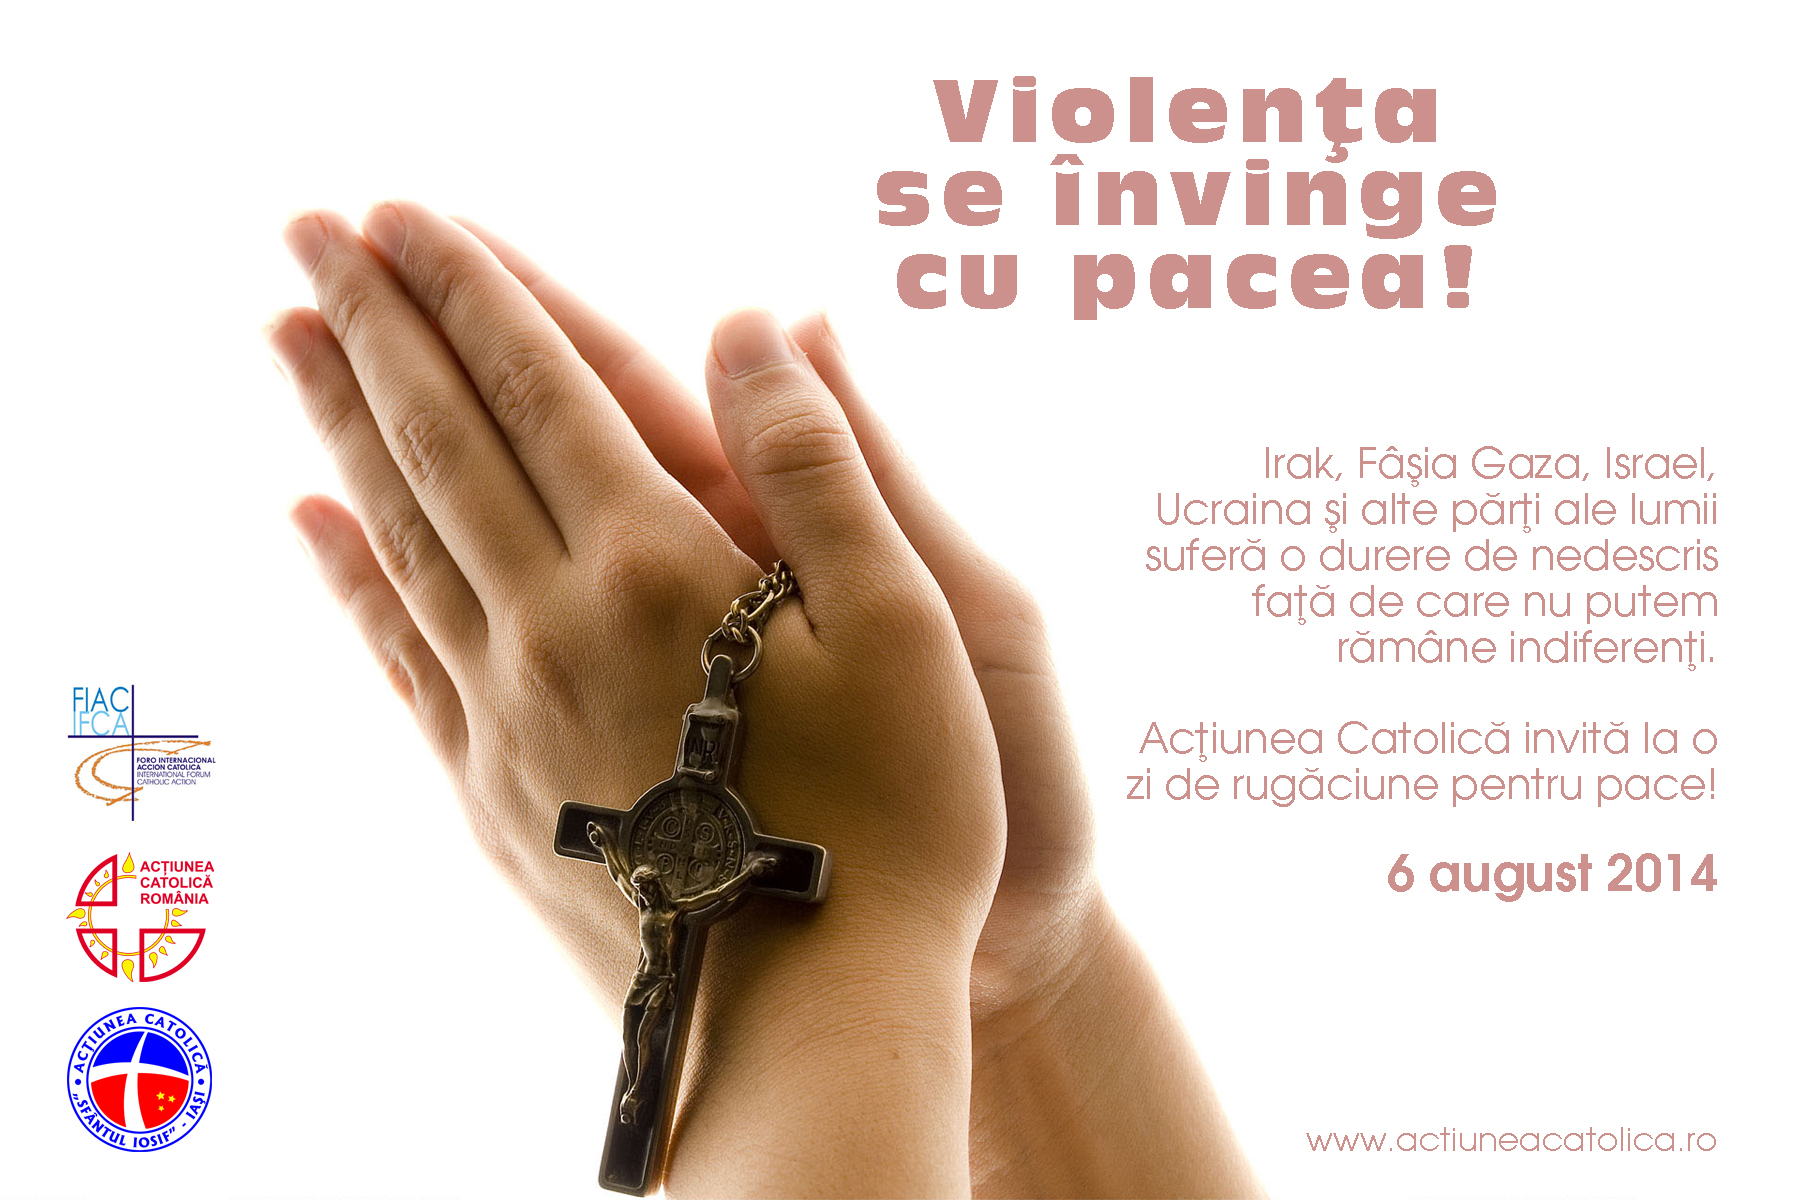 Apel la rugăciune pentru pace. Violenţa se învinge cu pacea!